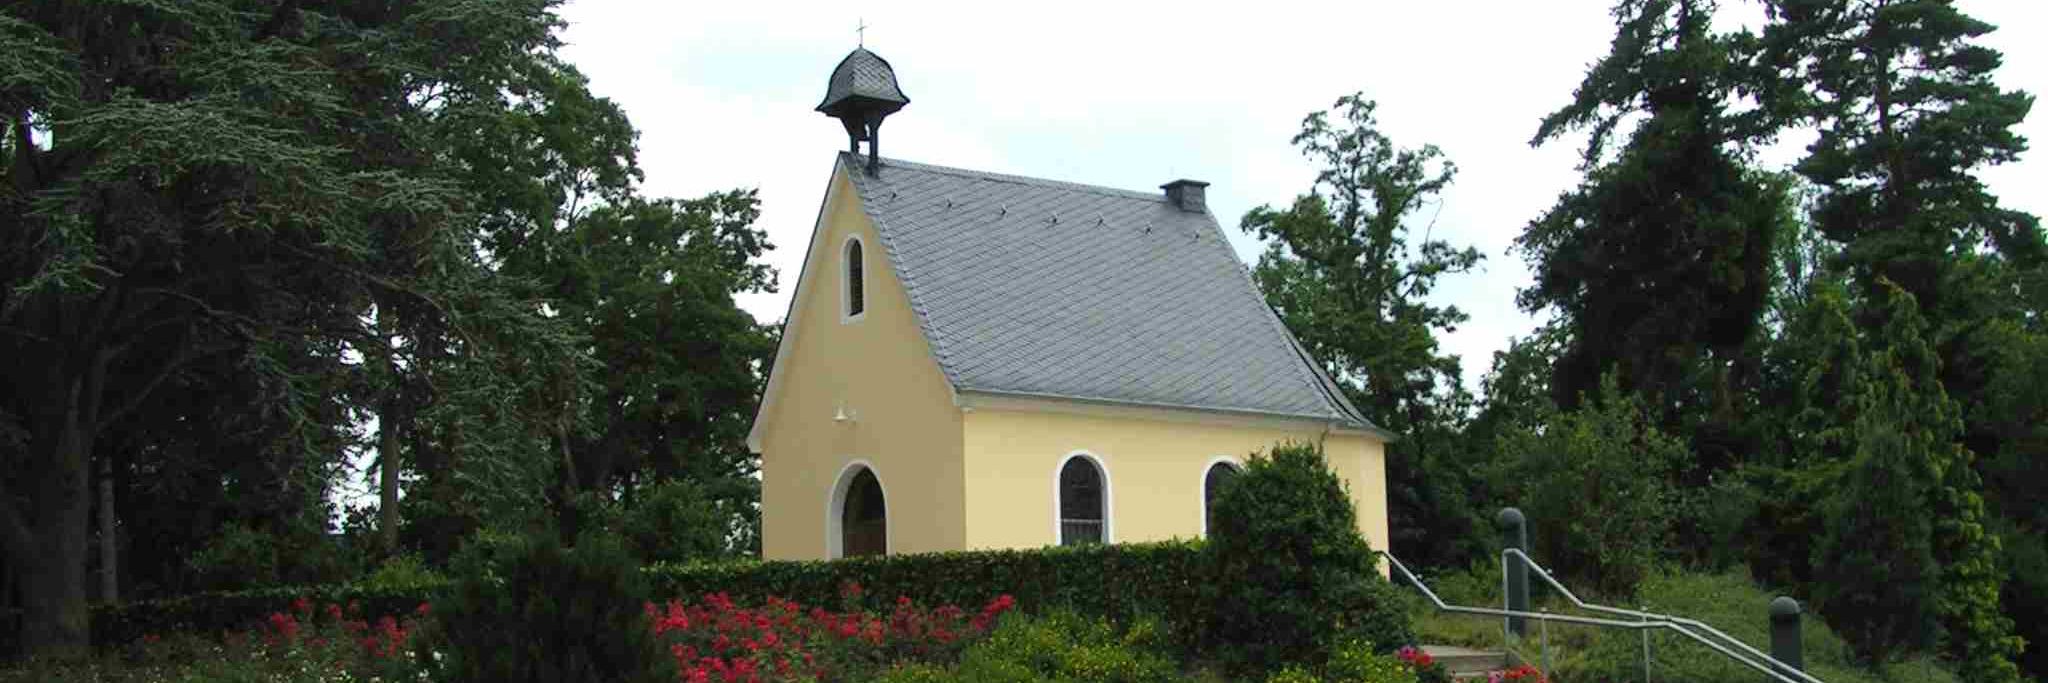 Marienkapelle Rheinbach